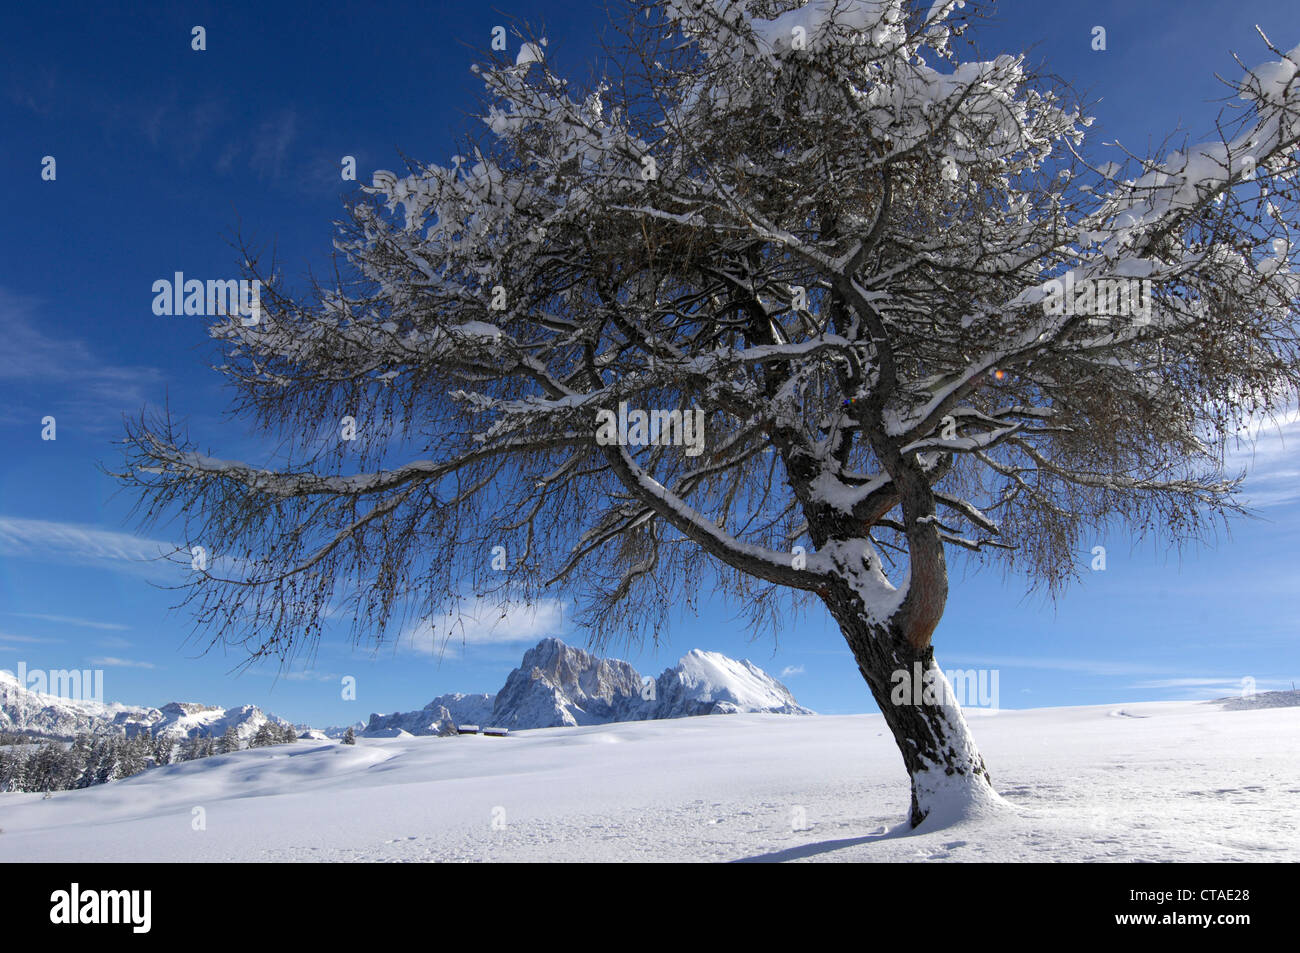 Albero a foglie decidue nella neve, Sassopiatto pascolo alpino, Alpe di Siusi, Dolomiti, Alto Adige, Trentino Alto Adige, Italia Foto Stock